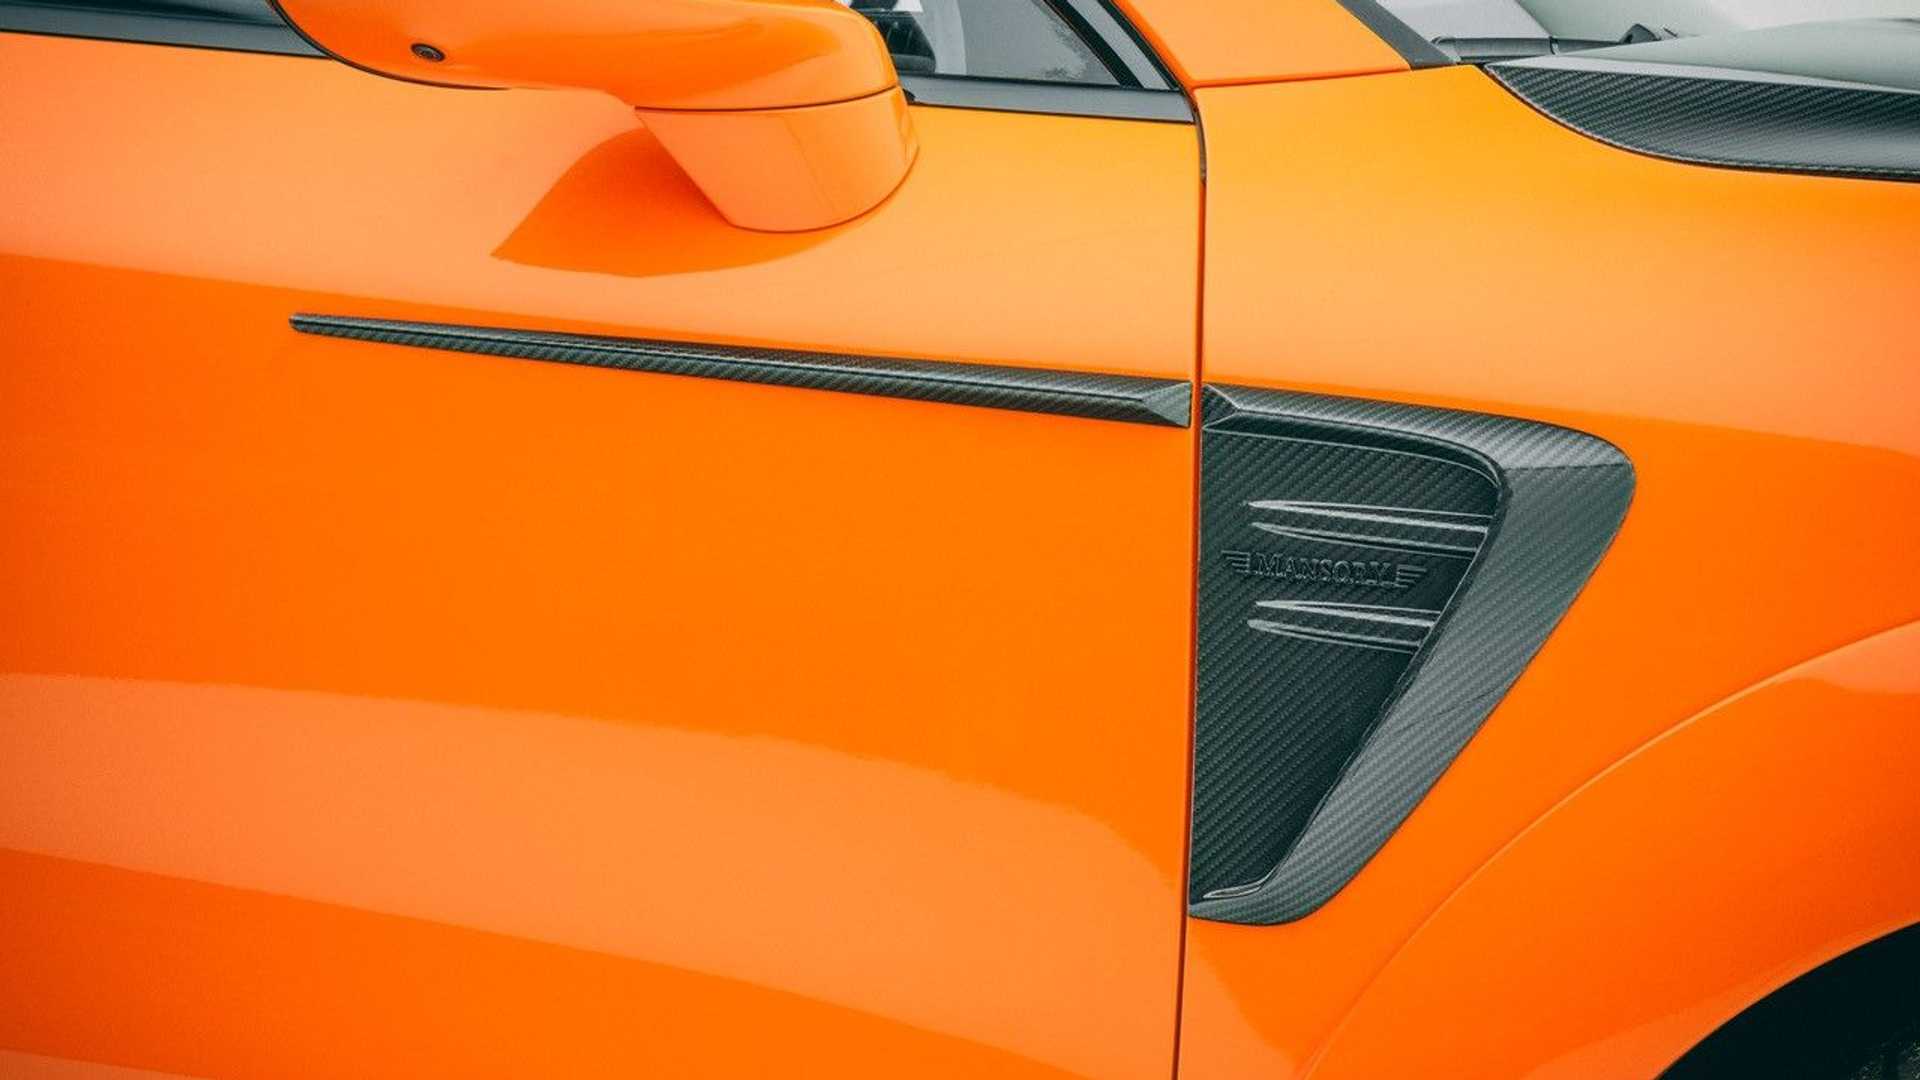 نمای بدنه بیرونی شاسی بلند پورشه کاین تیونینگ منصوری / Mansory Porsche Cayenne با طرح دو رنگ نارنجی و مشکی